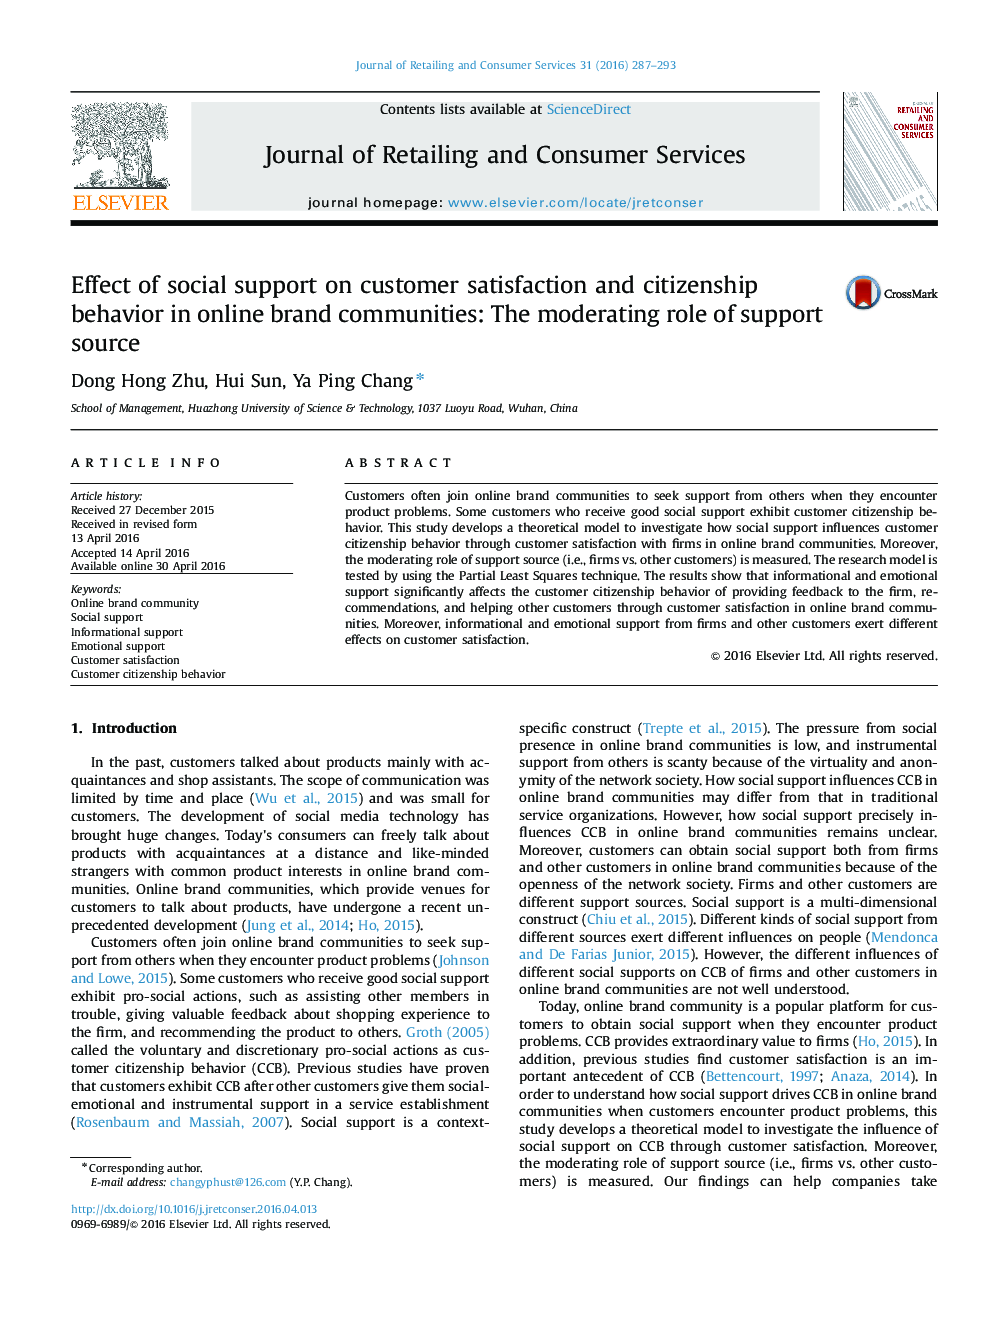 اثر حمایت اجتماعی بر رضایت مشتری و رفتار شهروندی در جوامع نام تجاری آنلاین: نقش تعدیلی منبع پشتیبانی